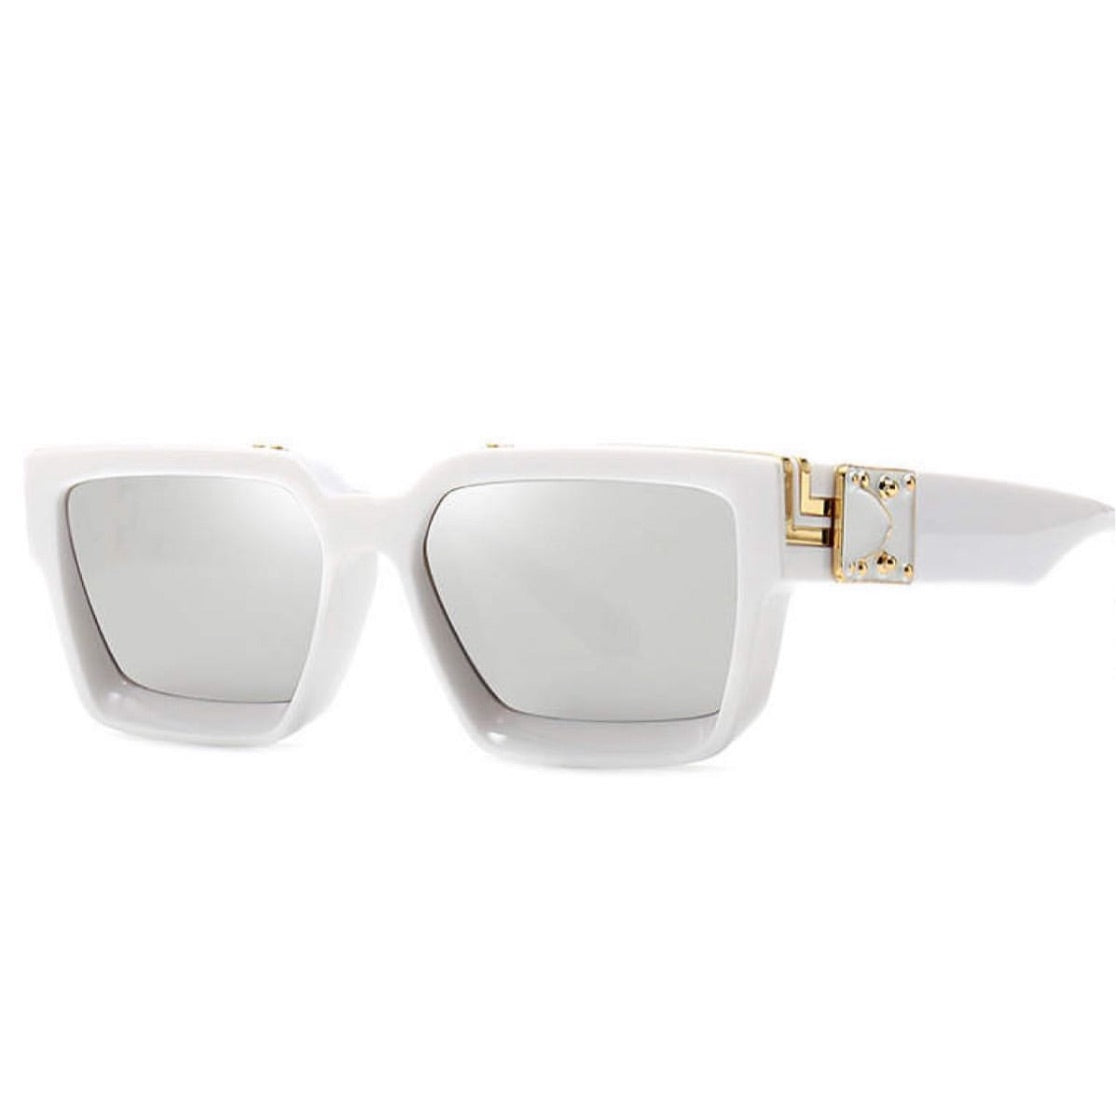 Retro Square glasses in white